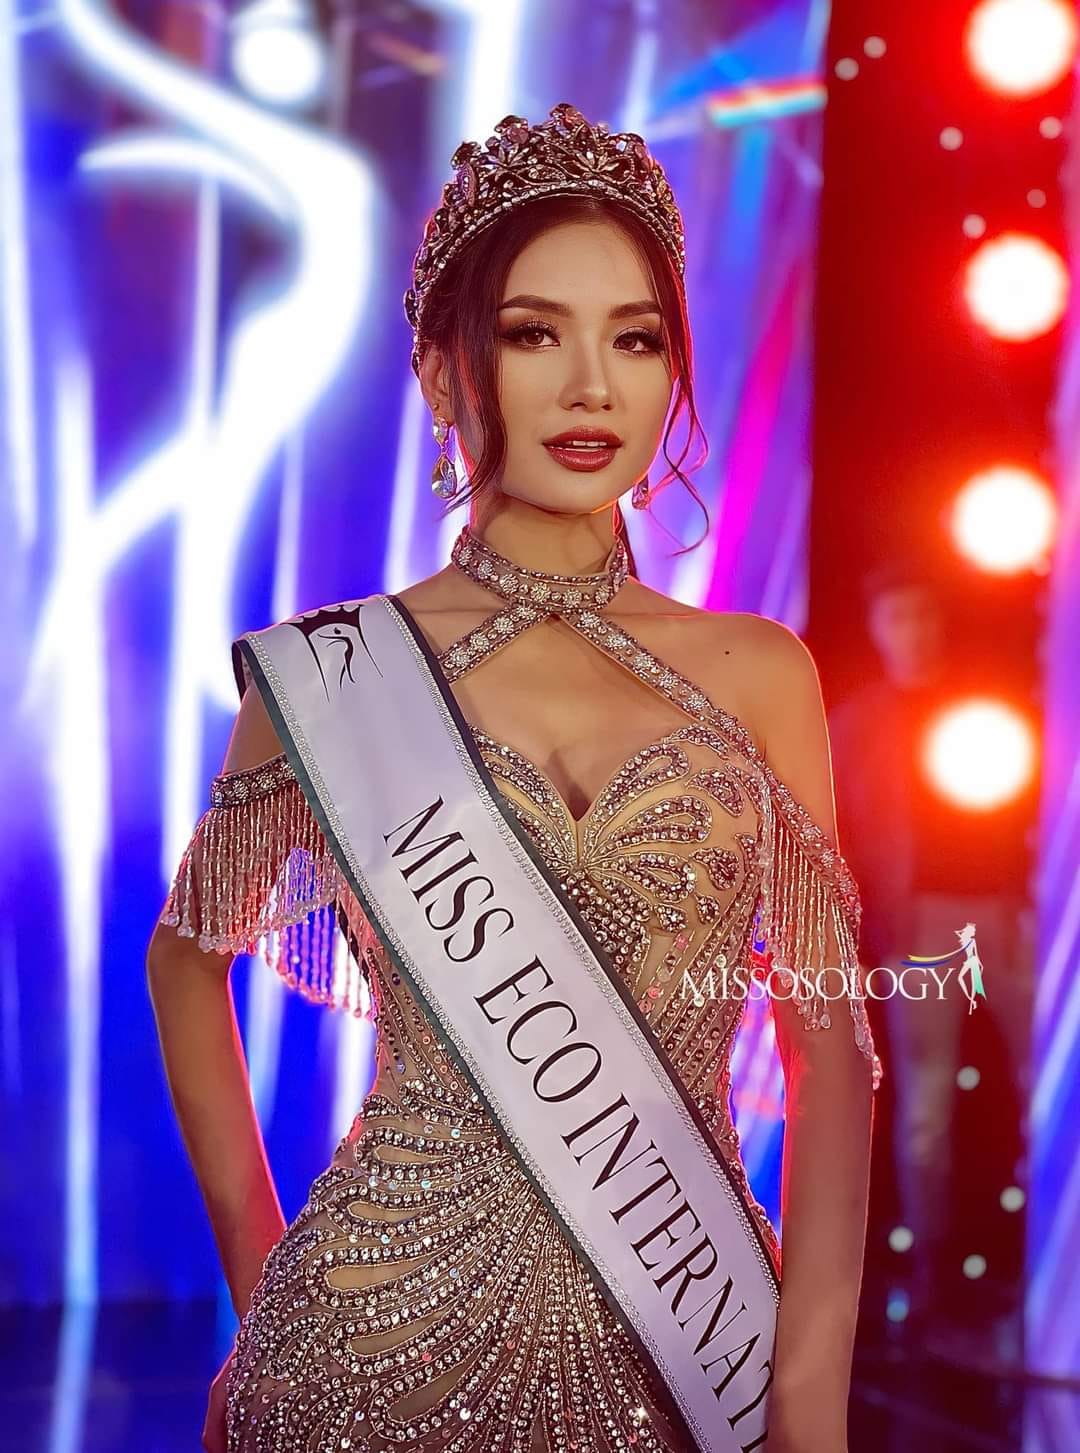 Nguyễn Thanh Hà đăng quang Hoa hậu Môi trường Thế giới 2023 - Ảnh 1.